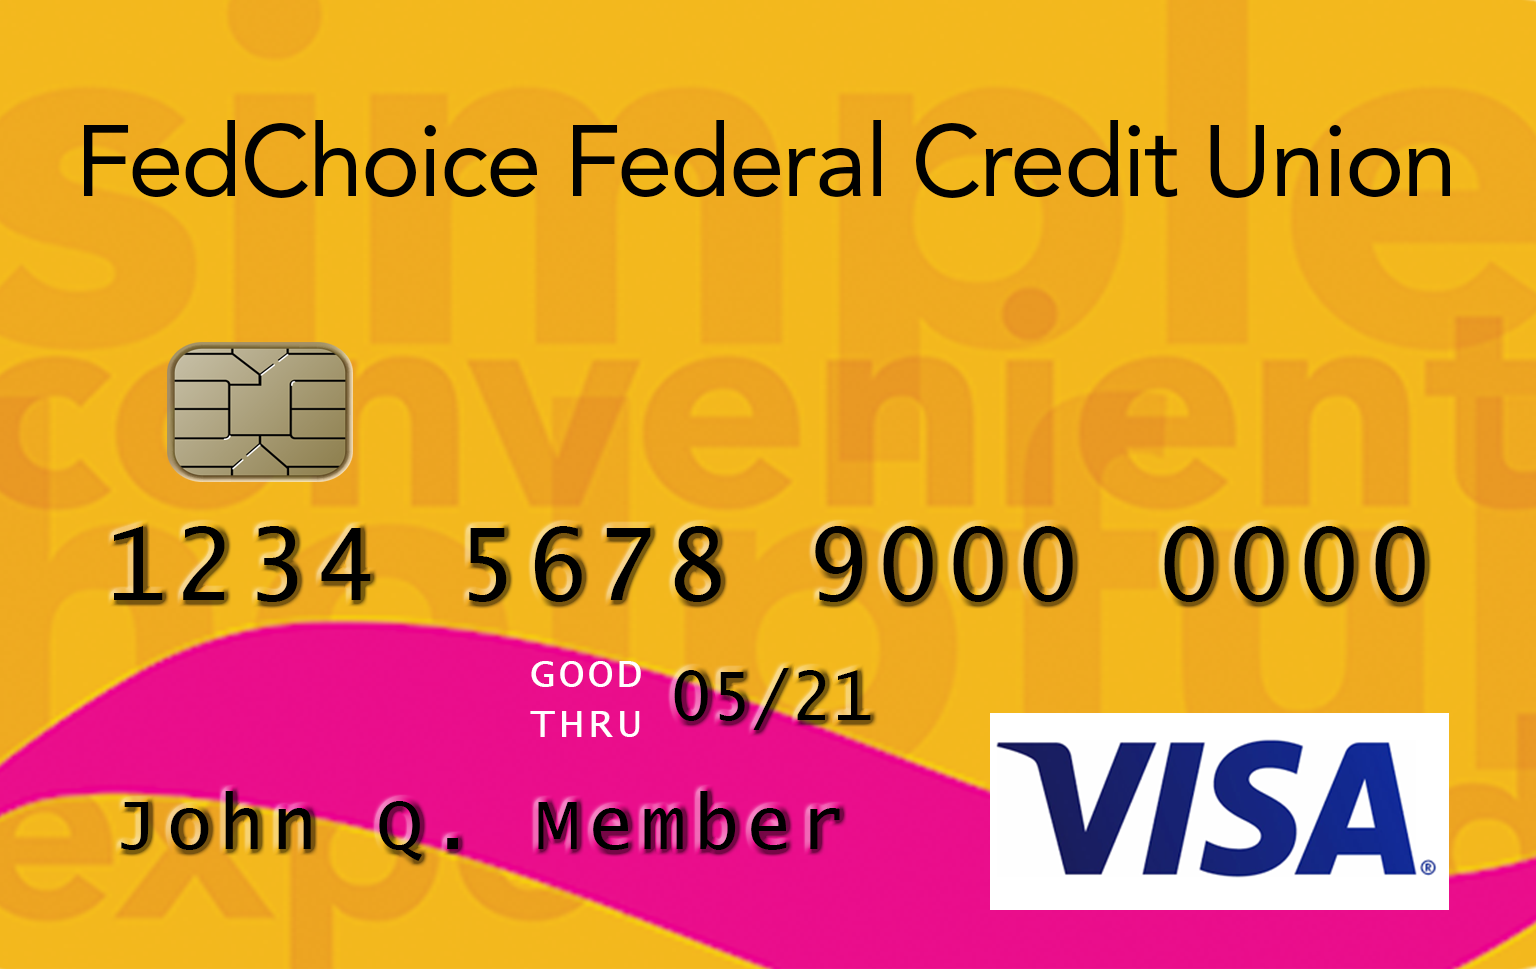 Visa Classic Credit Card